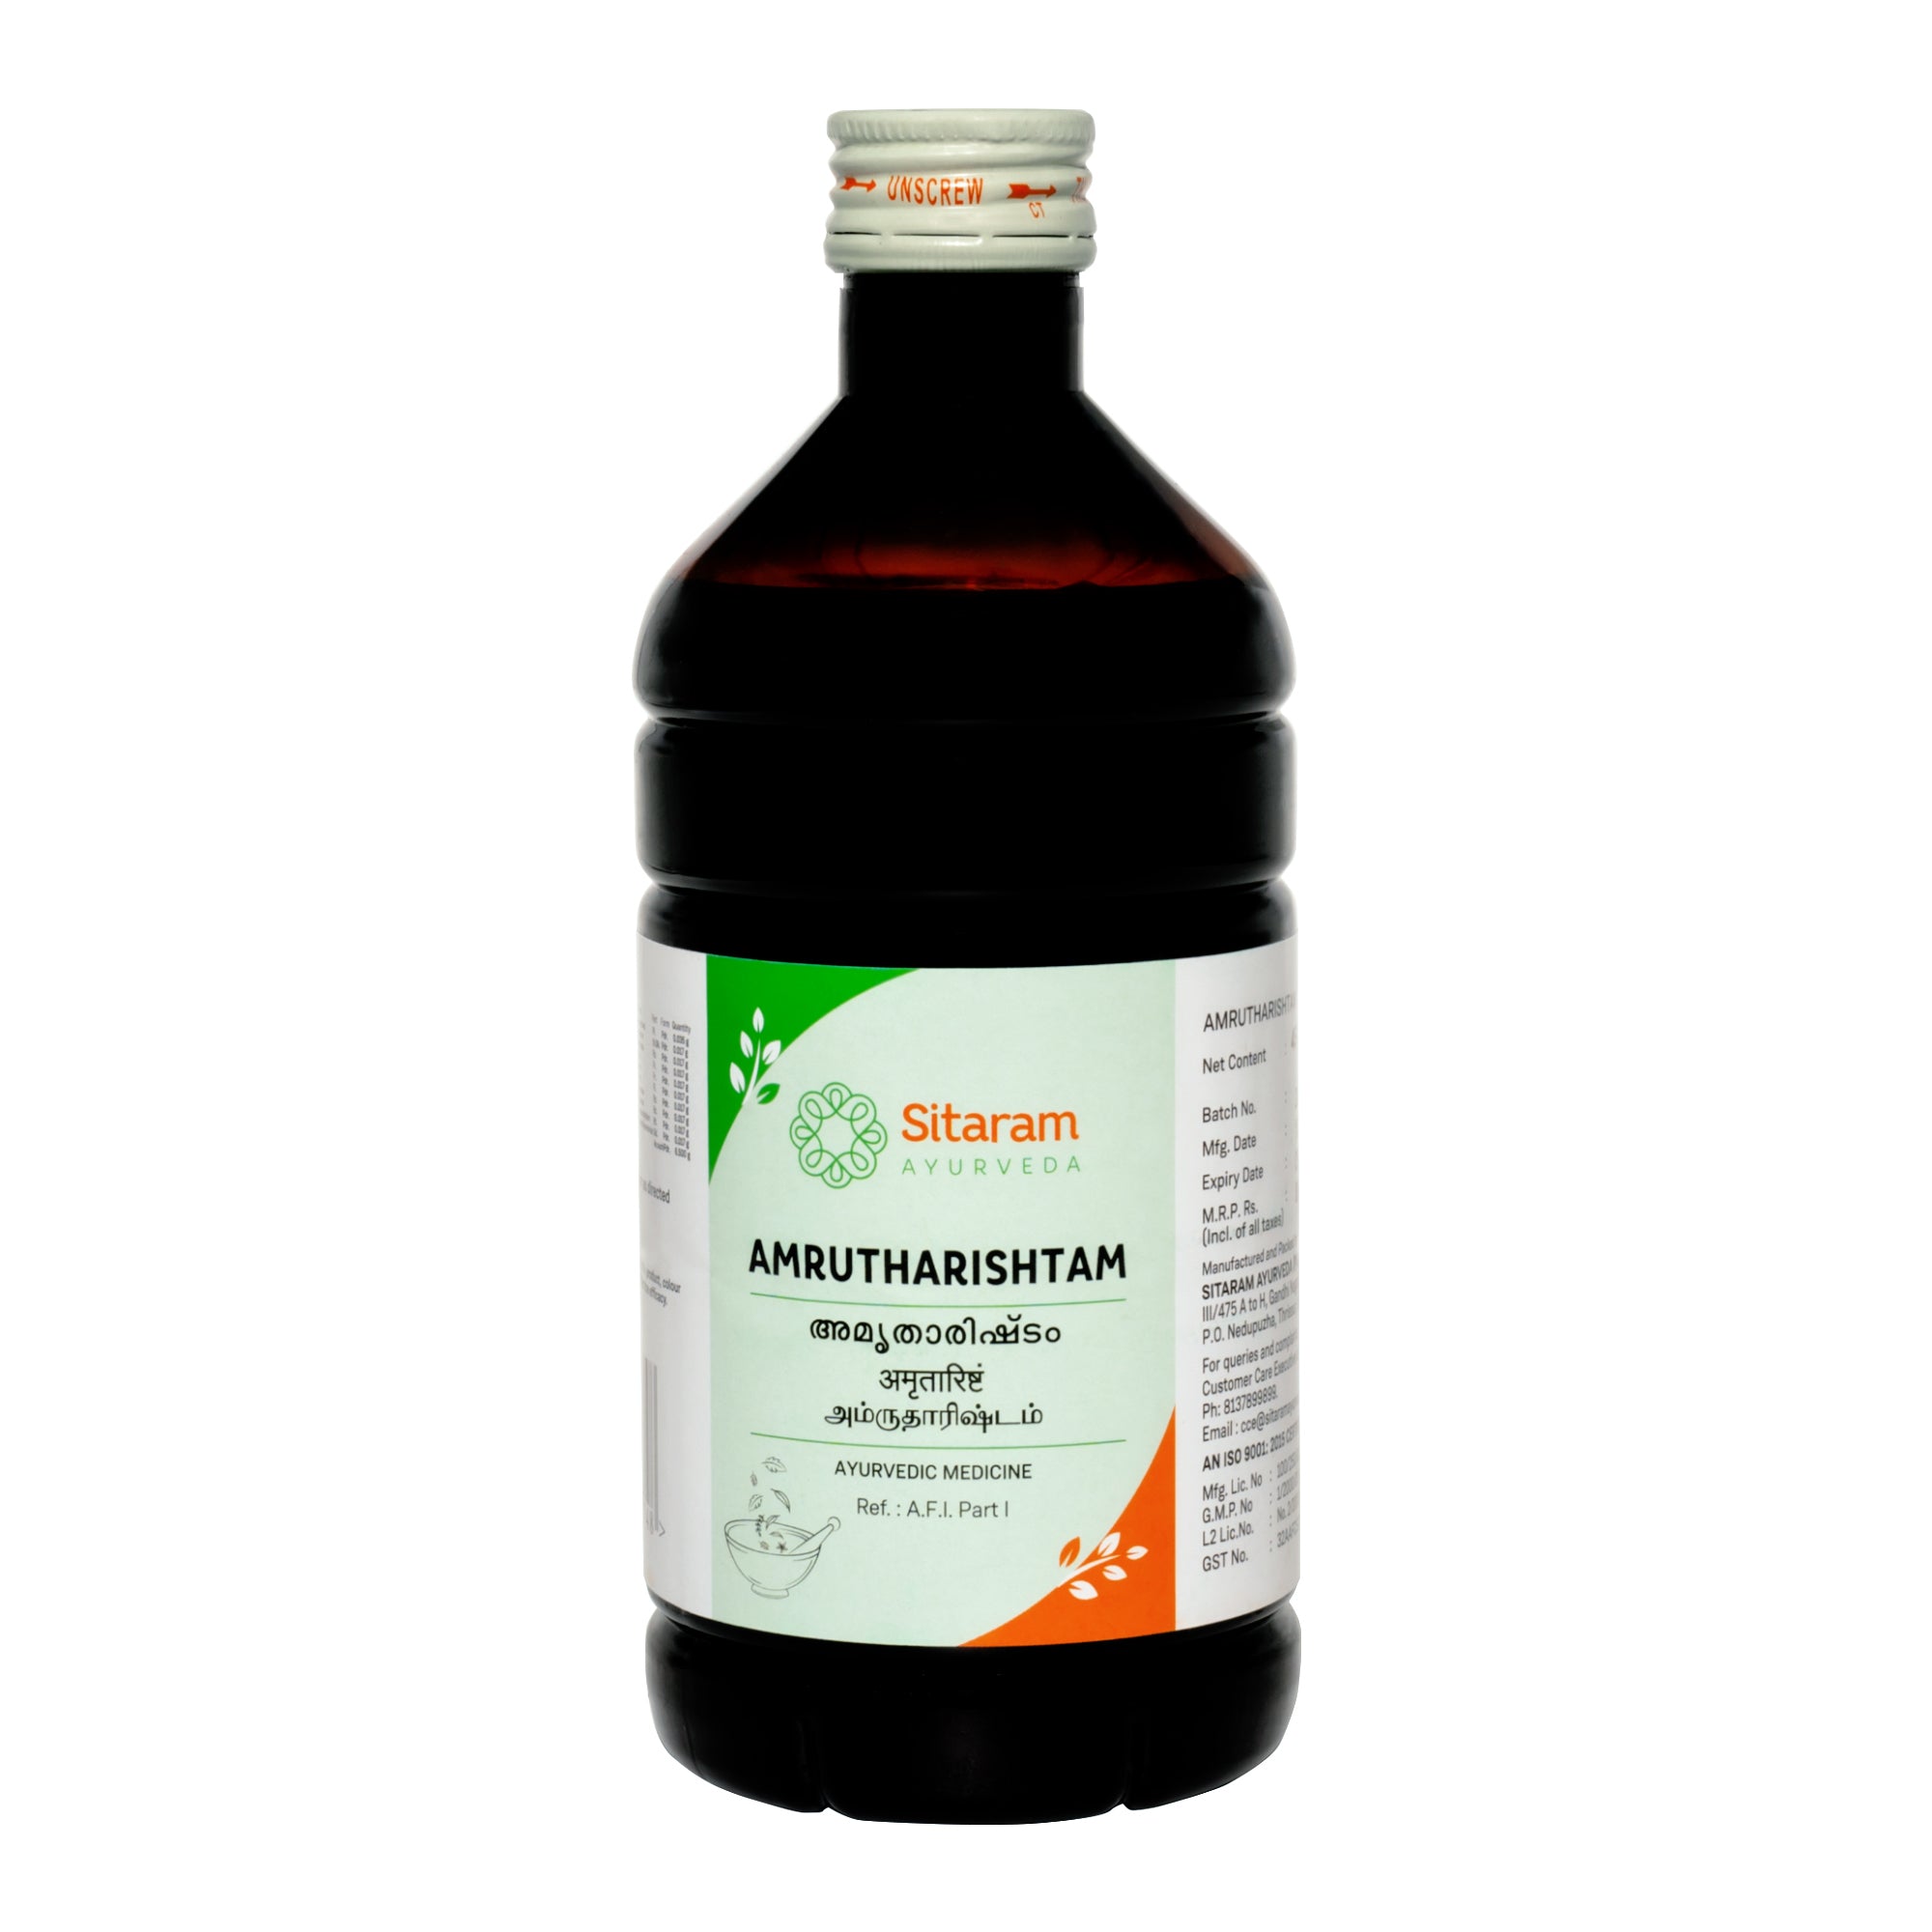 Sitaram Ayurveda Amrutharishtam 450 Ml - Pack of 3 (Prescription Medication)